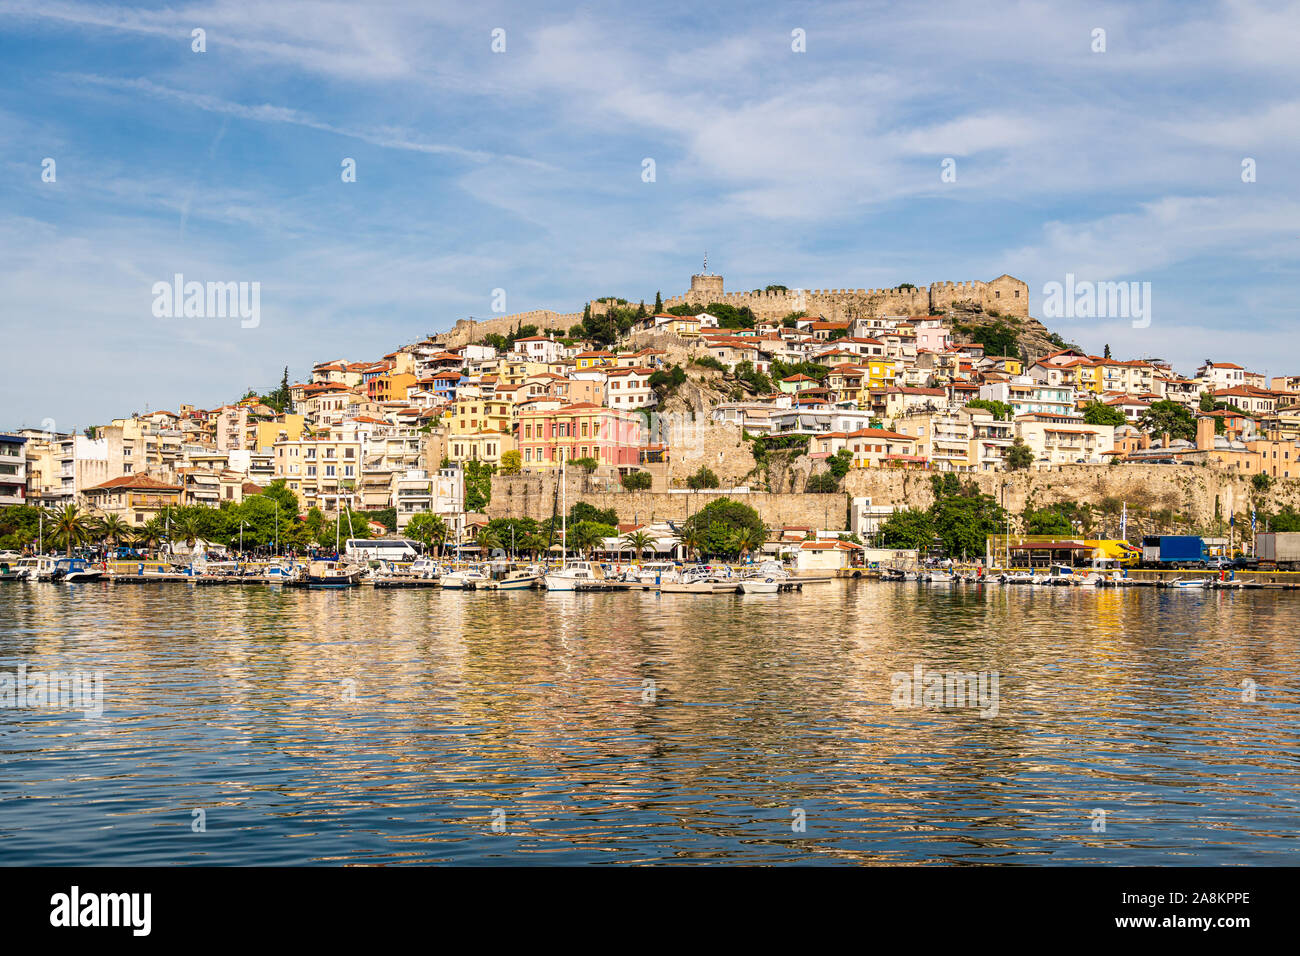 La vieille ville de Kavala avec son château byzantin par la mer Ionienne en Grèce Banque D'Images